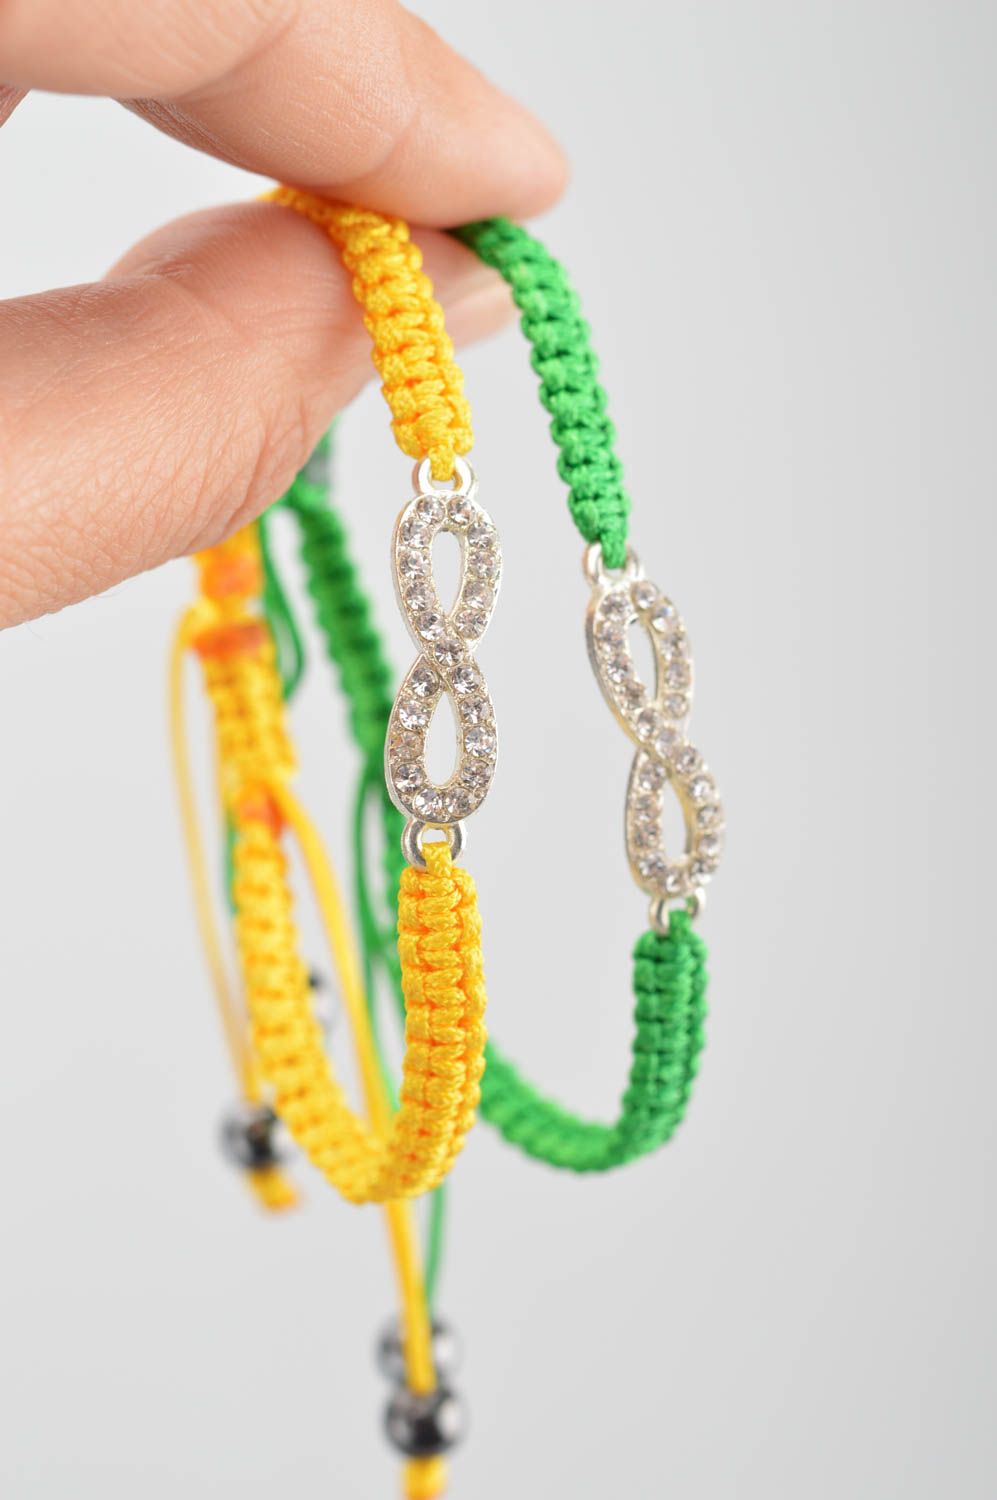 Набор браслетов из ниток желтый и зеленый 2 изделия ручной работы для девушки фото 3